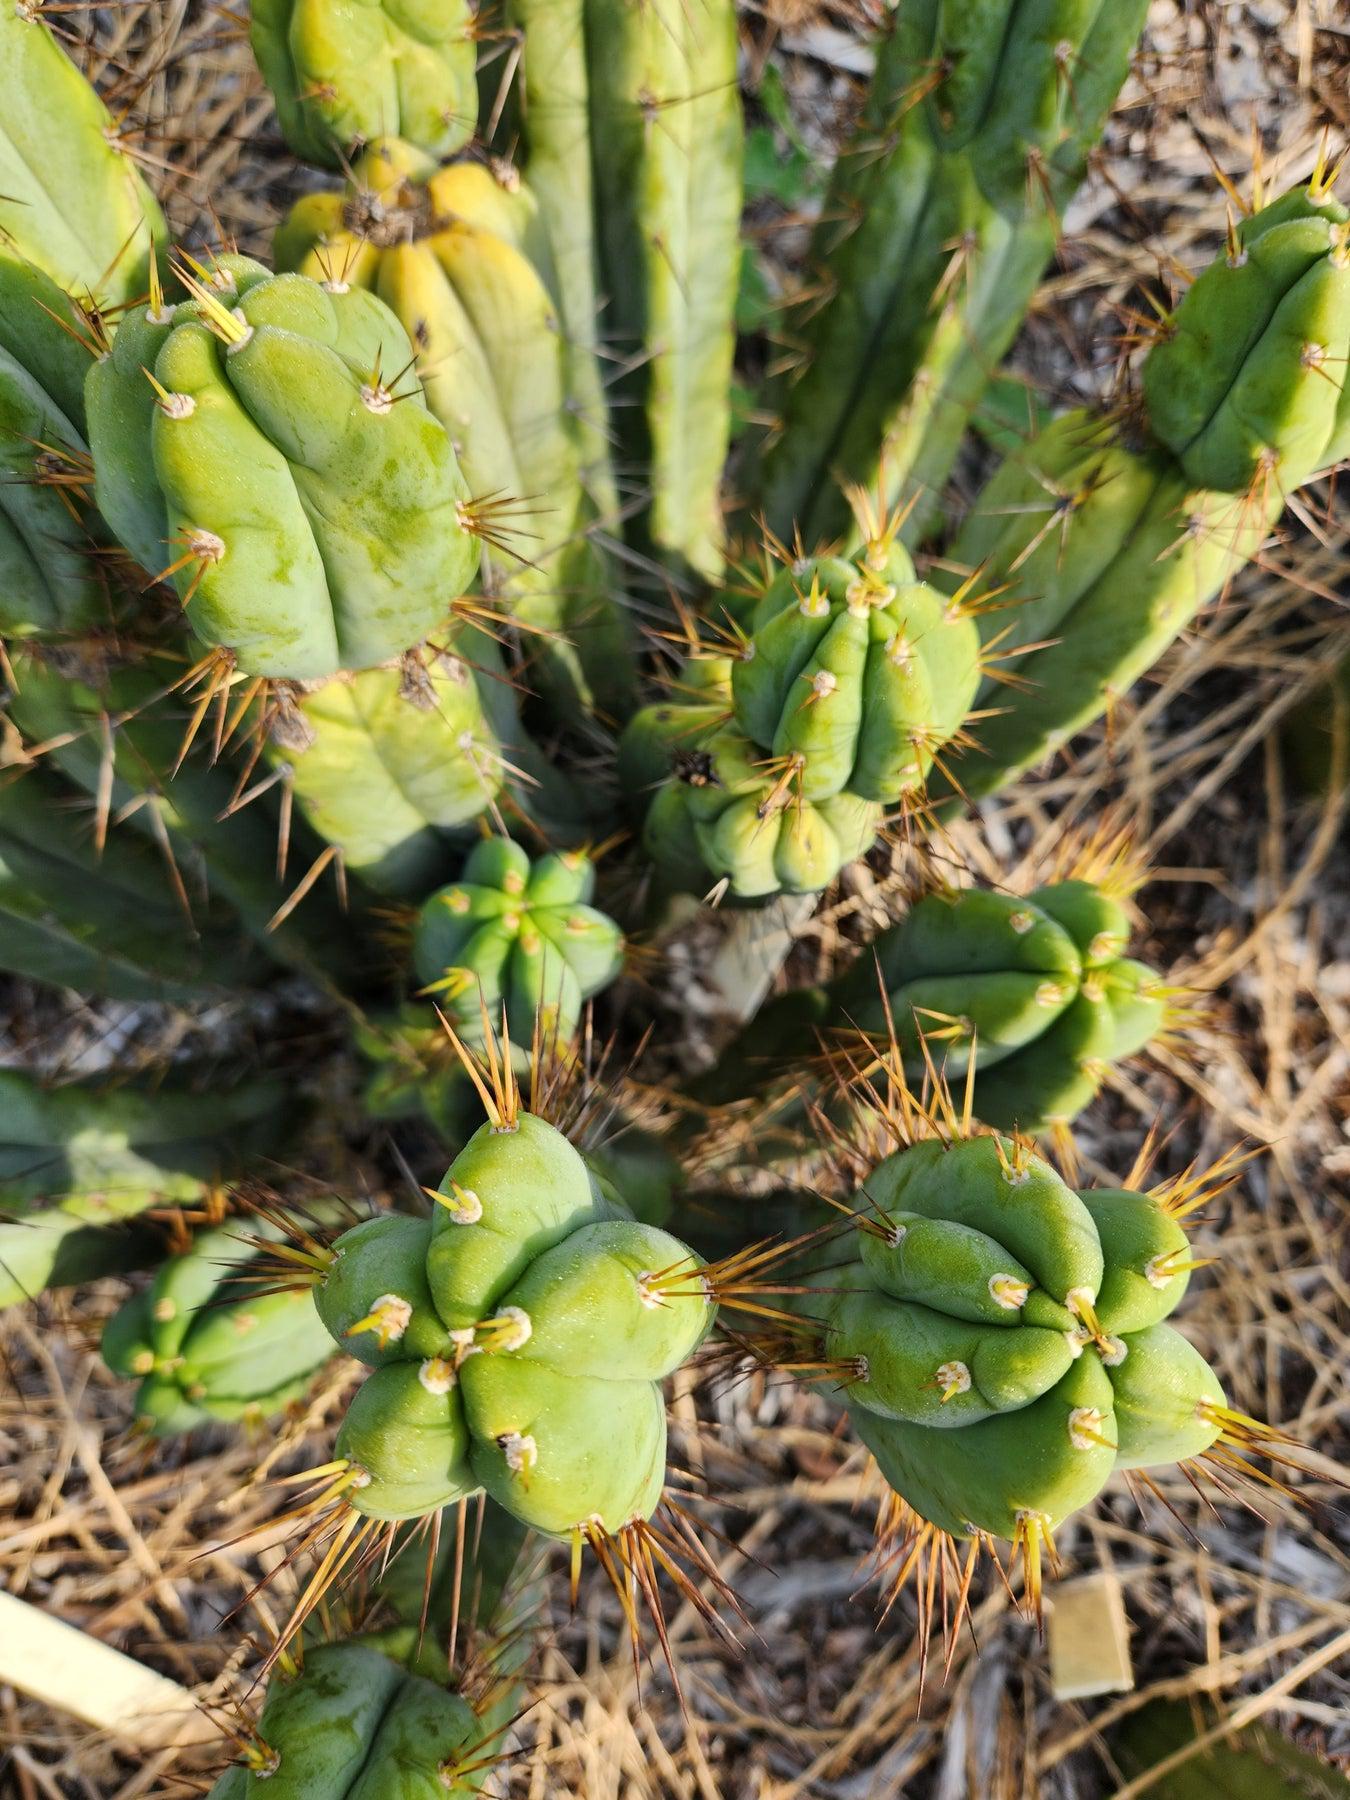 #EC28 EXACT Trichocereus OTB "Old Town Bridgesii" Cactus cutting 8-10"-Cactus - Large - Exact-The Succulent Source